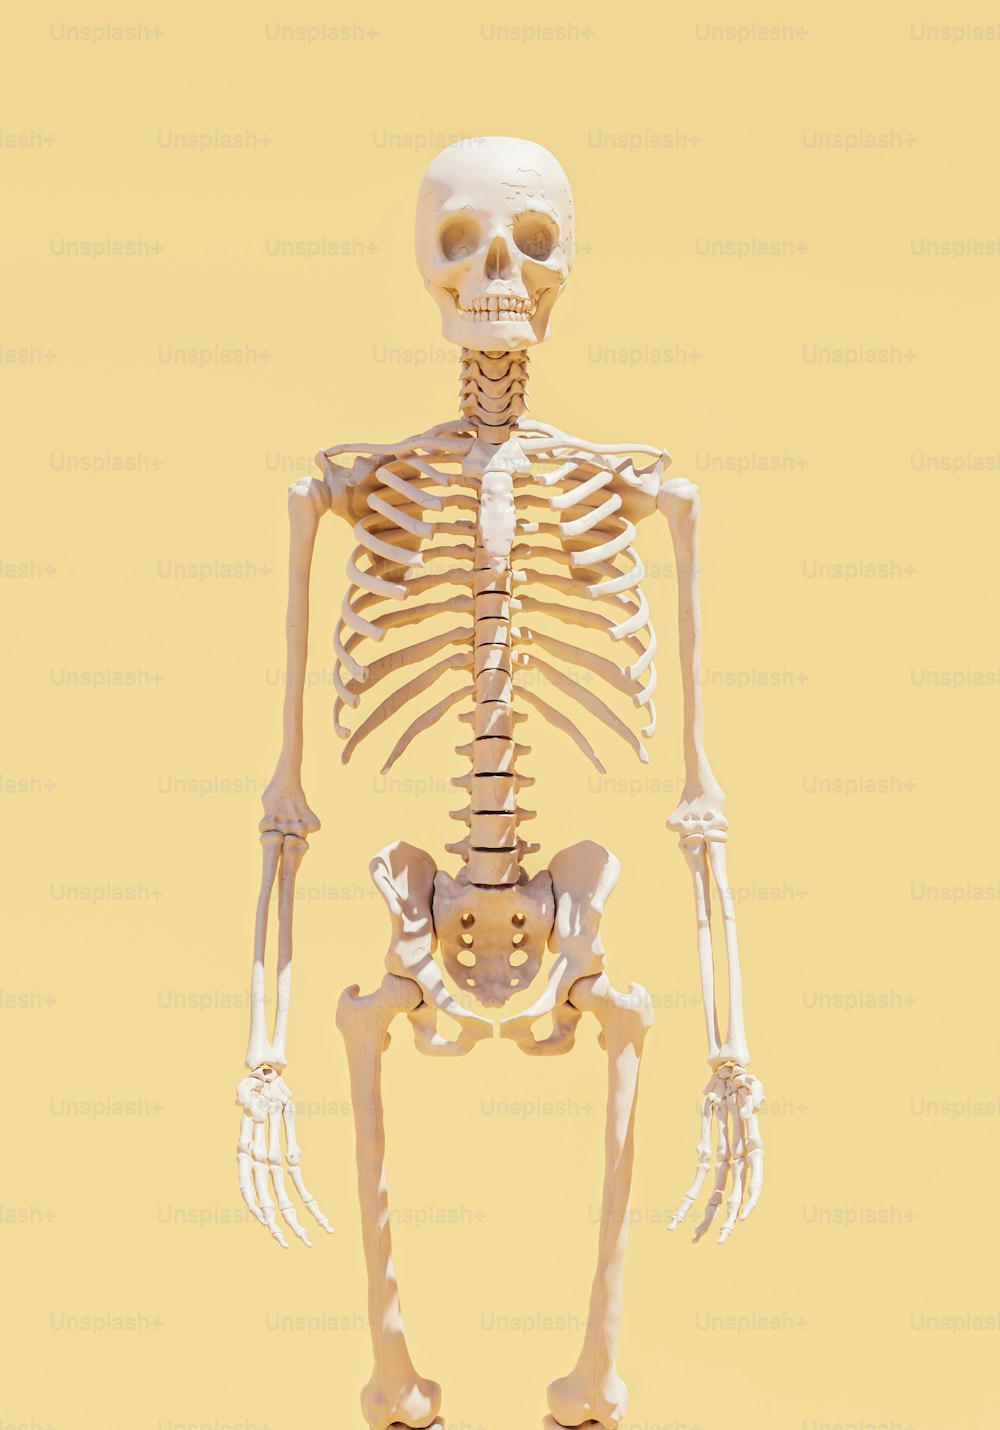 Uno scheletro è in piedi nel mezzo di uno sfondo giallo